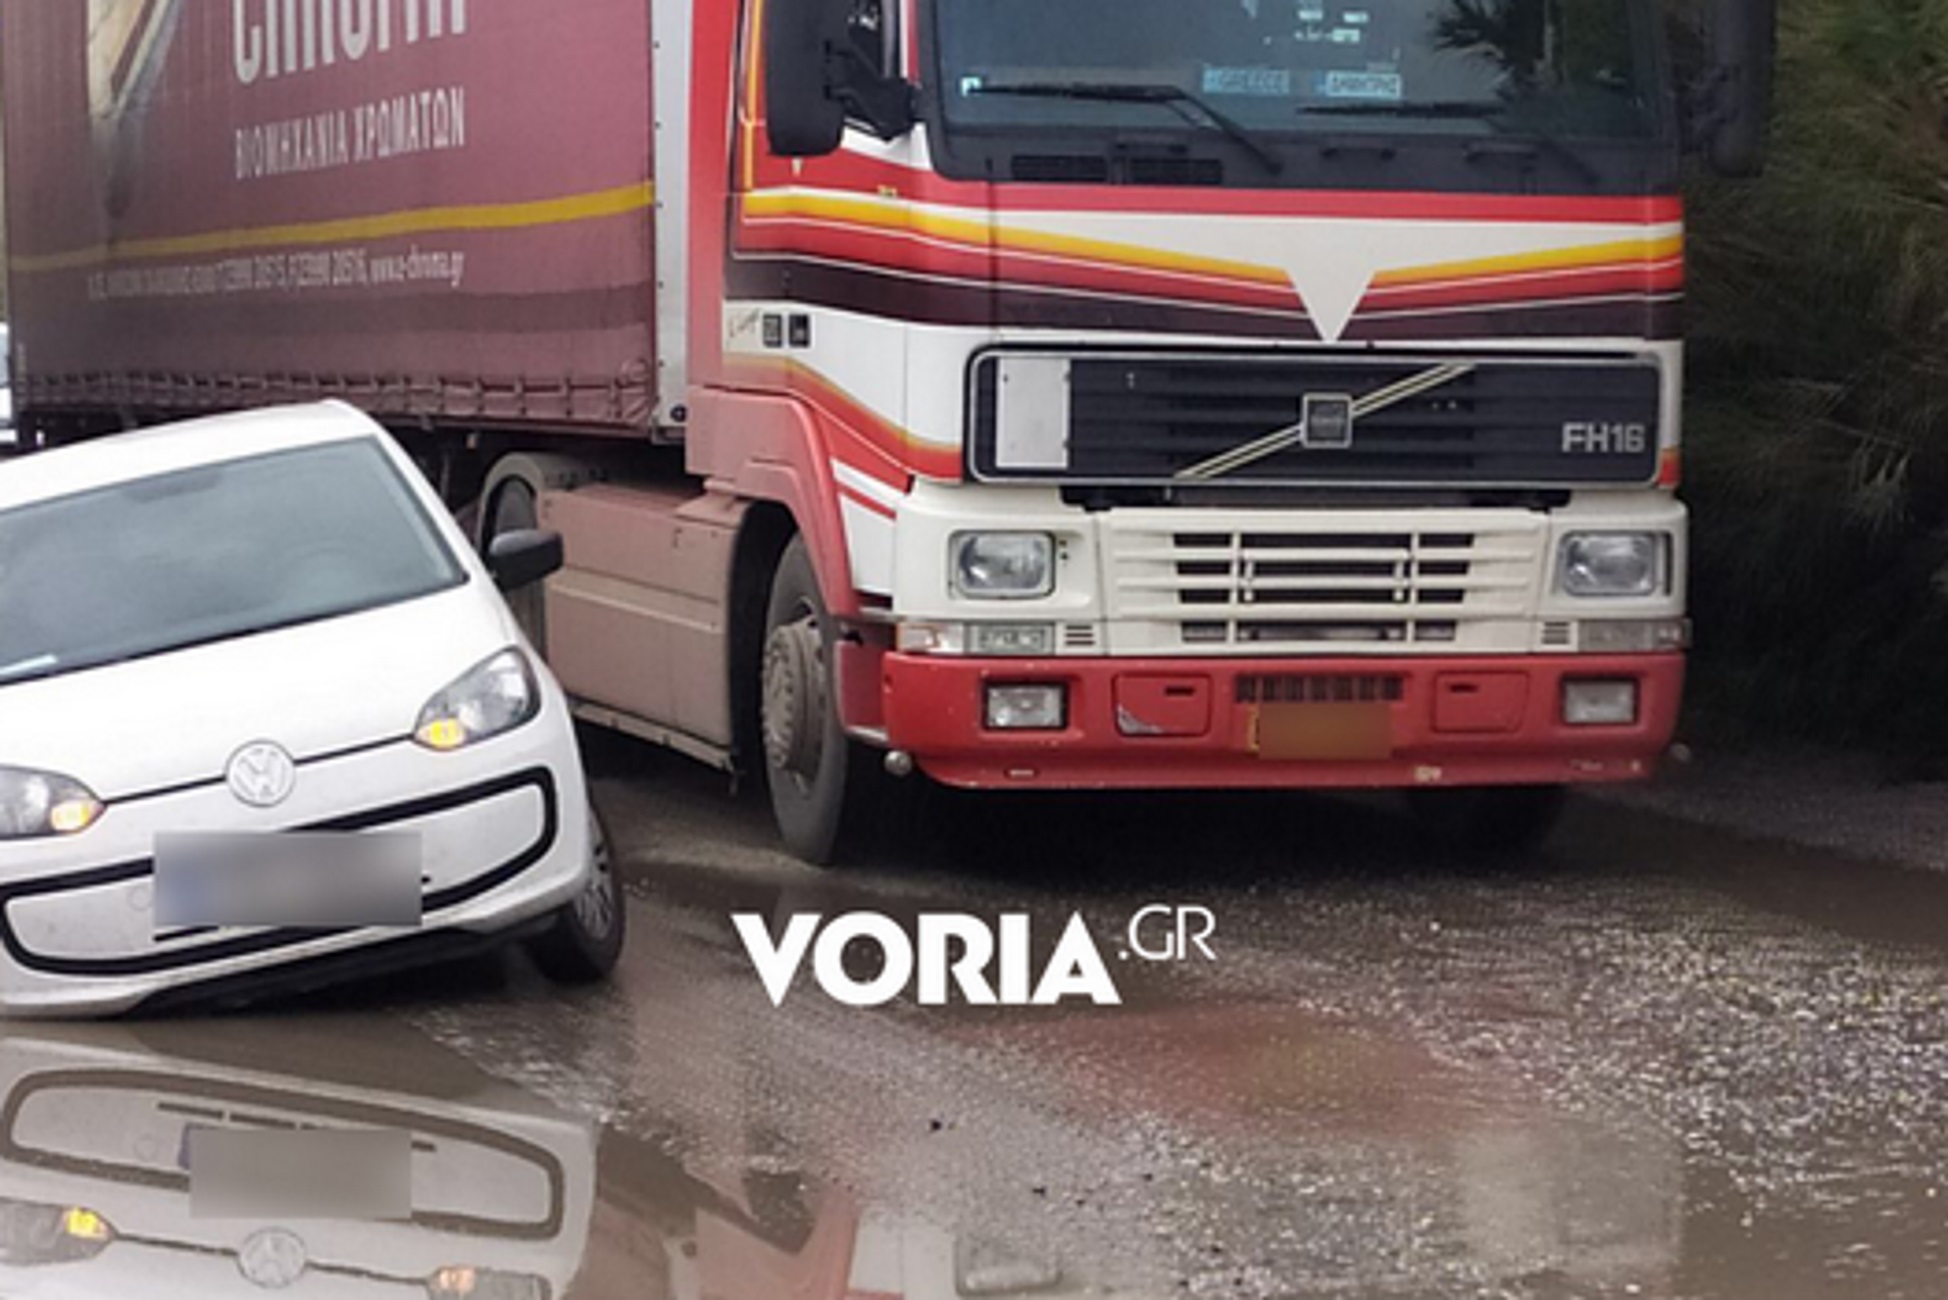 Θεσσαλονίκη: Αυτή είναι η αόρατη τρύπα στο δρόμο που “καταπίνει” αυτοκίνητα και μηχανάκια [pics]